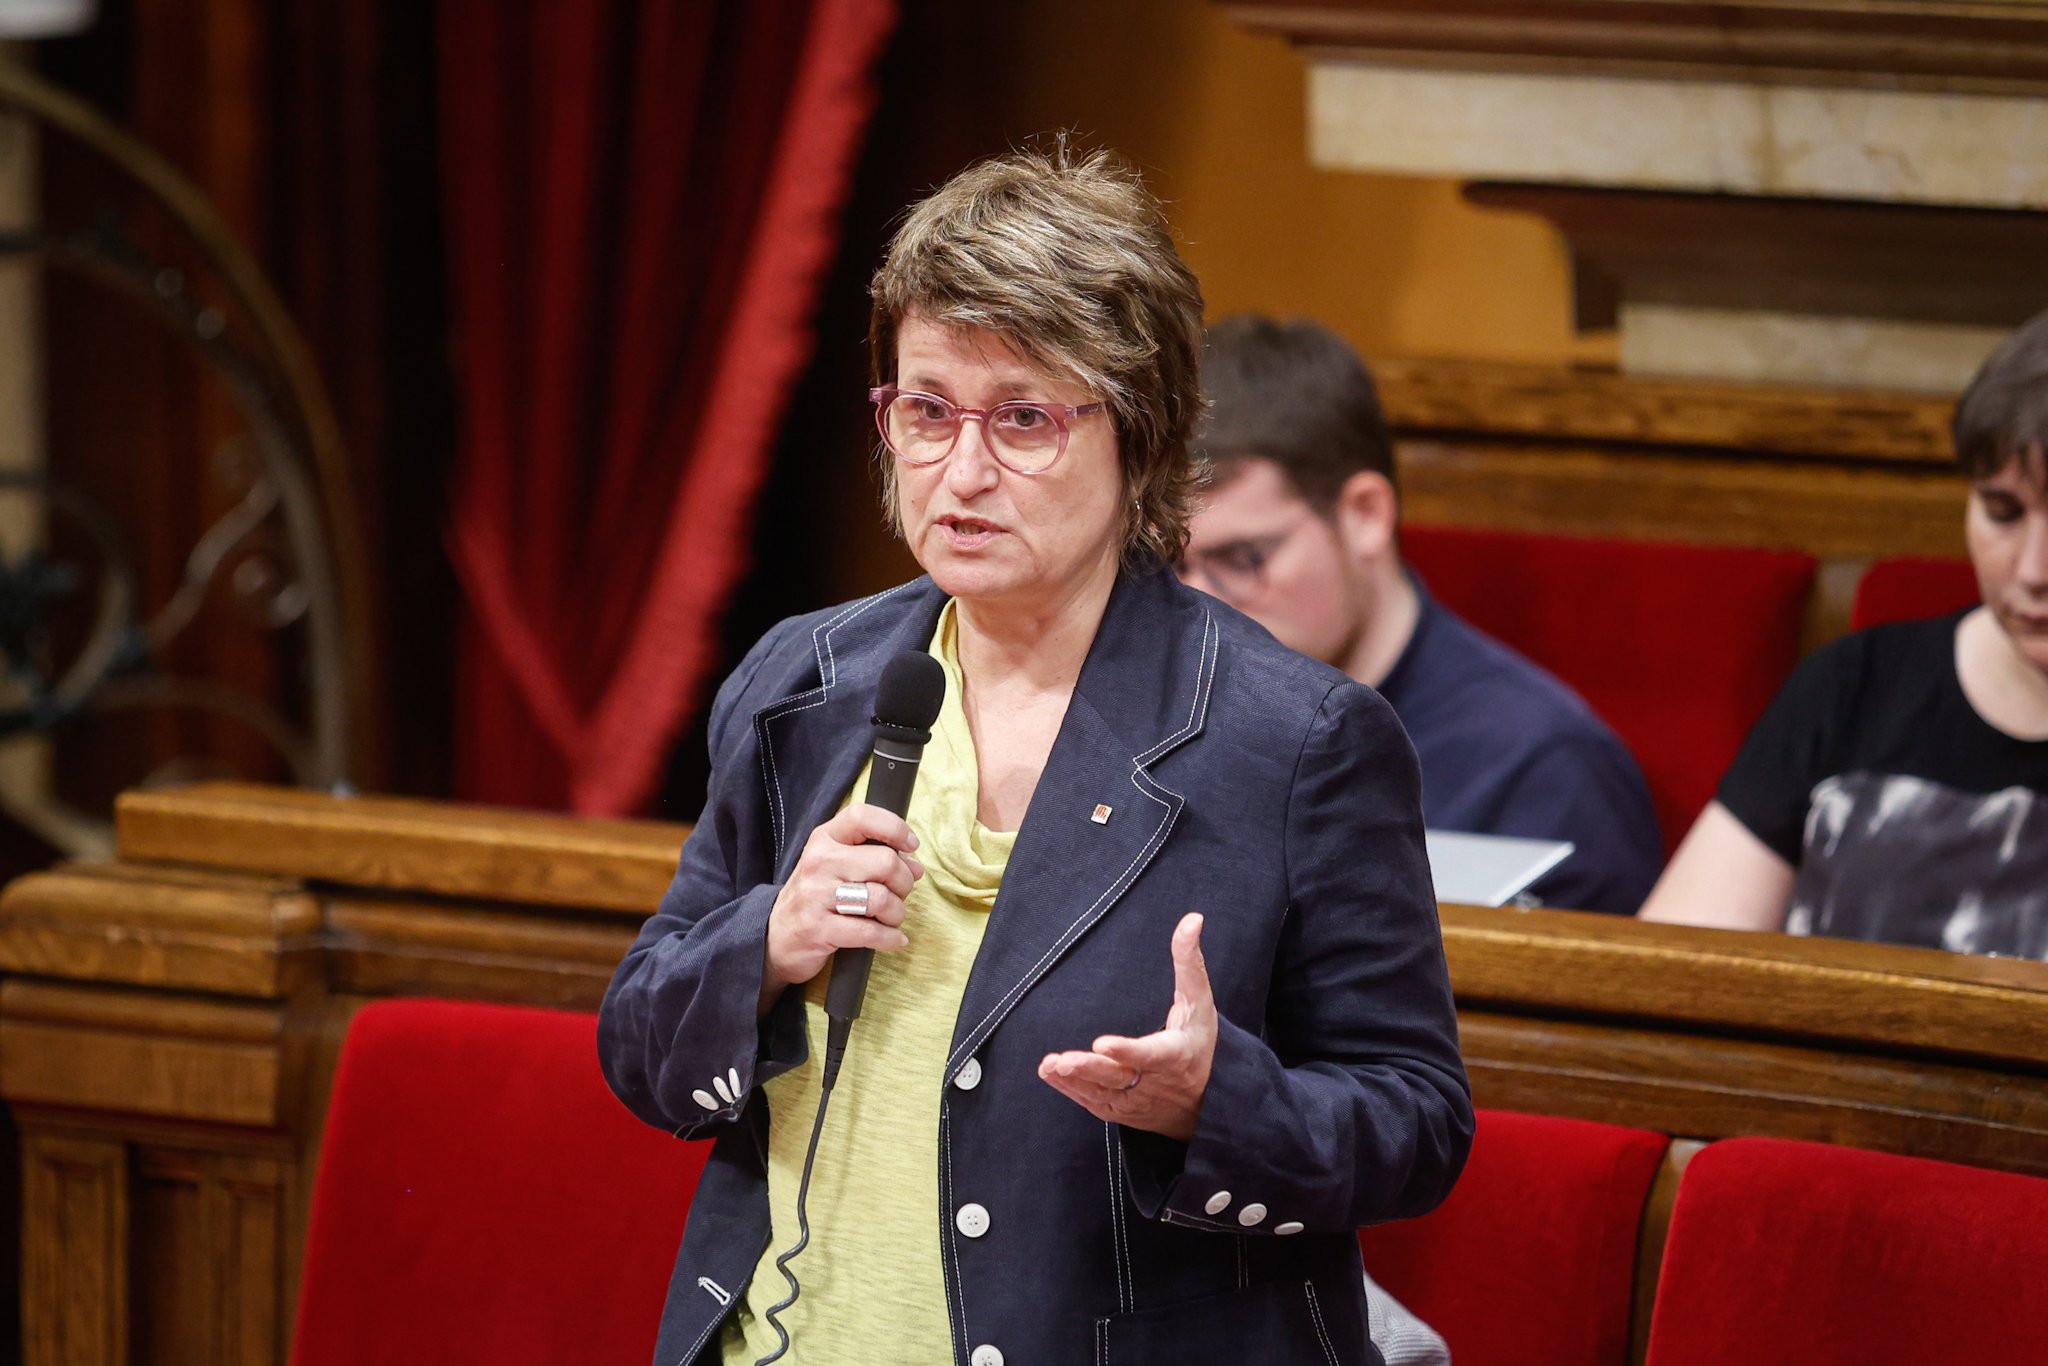 Anna Simó tilda de "intolerable" la nueva sentencia del TSJC contra el catalán en las aulas